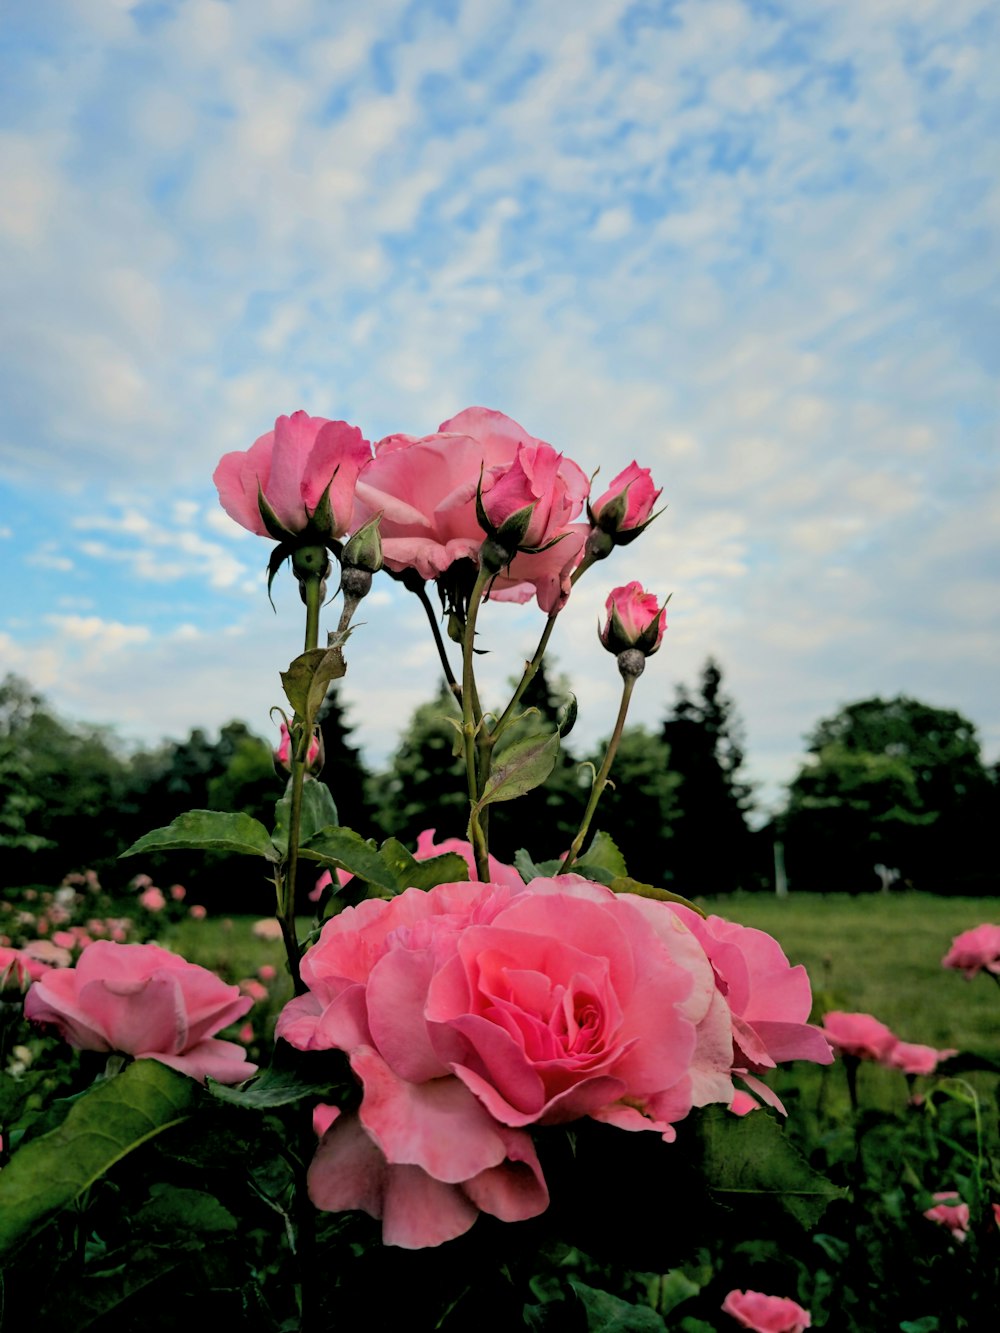 흐린 푸른 하늘 아래 분홍 장미가 가득한 들판